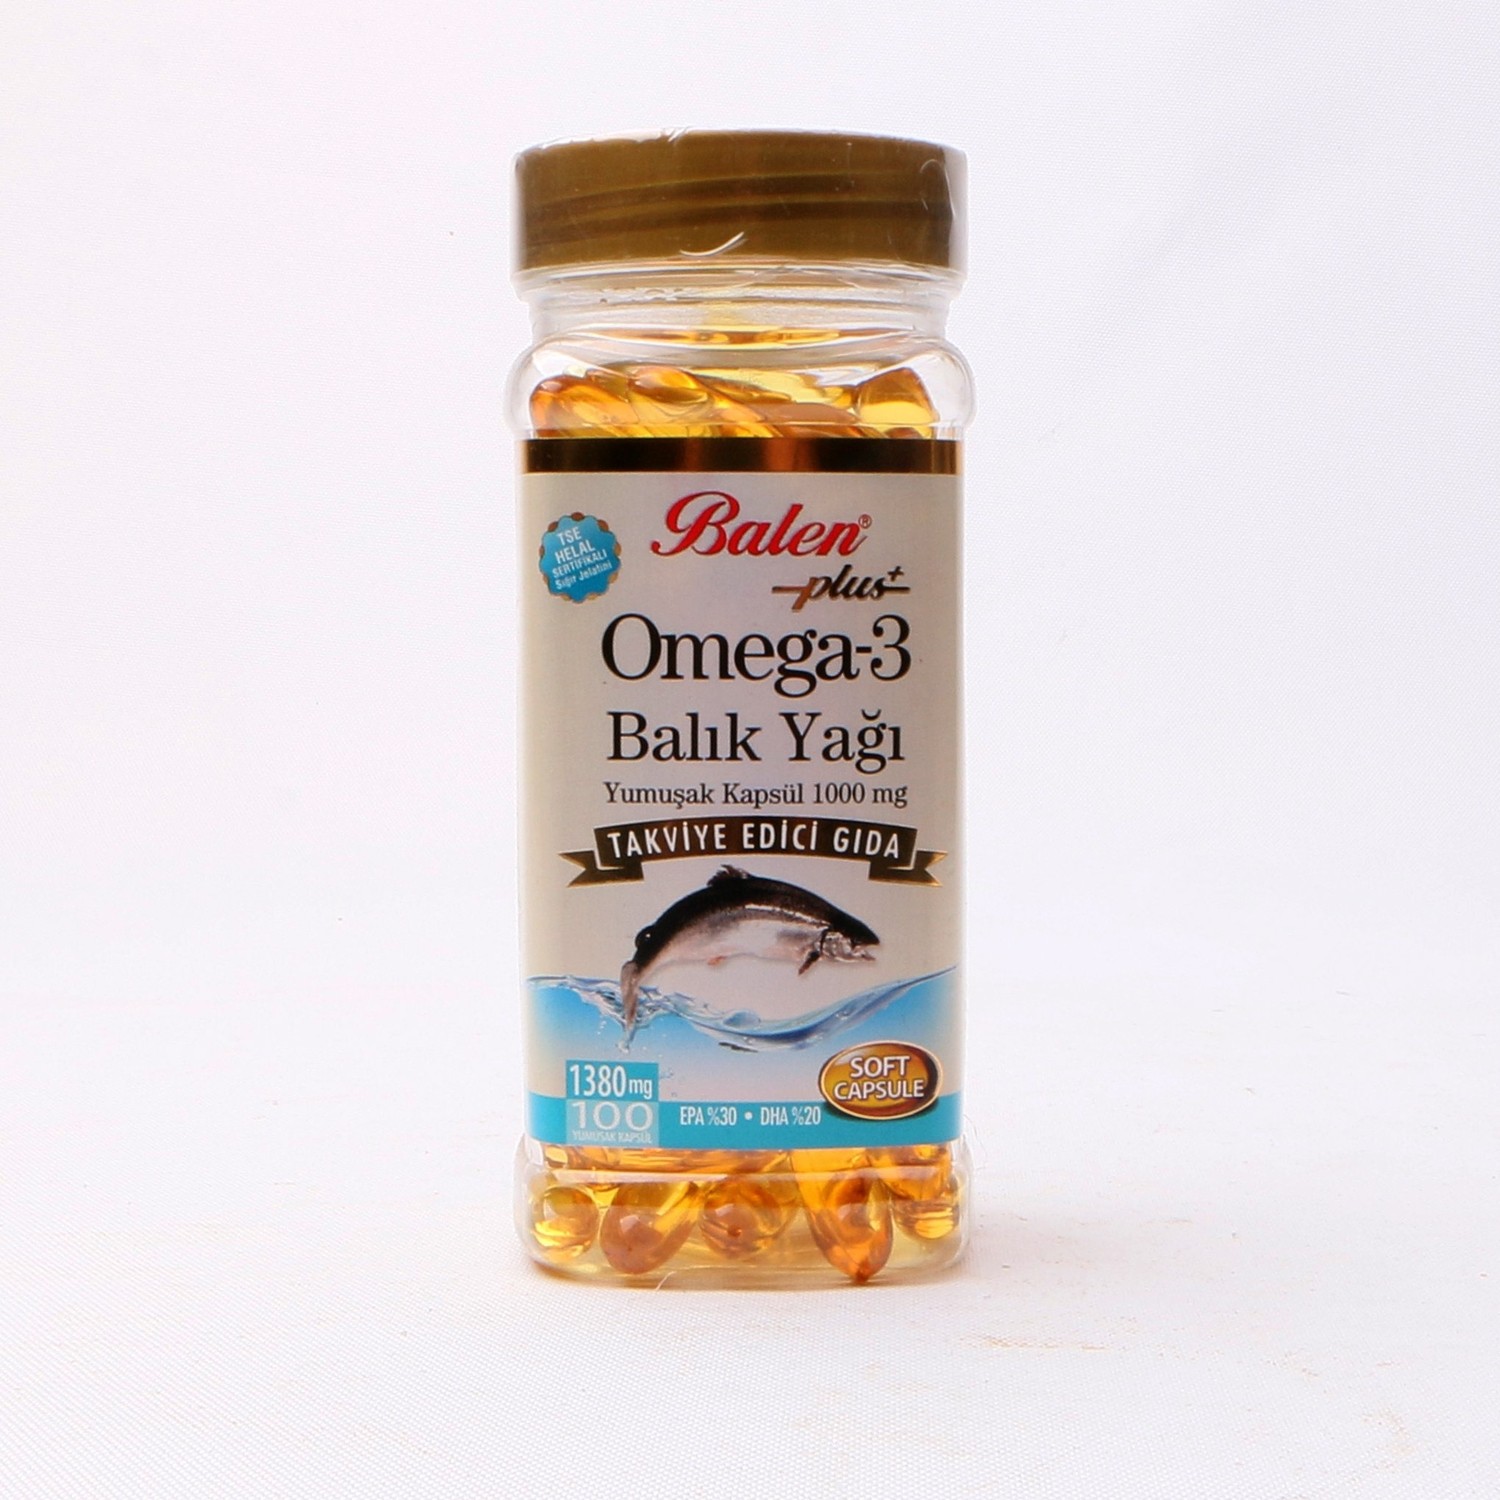 Рыбий жир Balen Omega 3, 200 капсул, 1380 мг рыбий жир mirrolla для сердца и сосудов 100 капсул